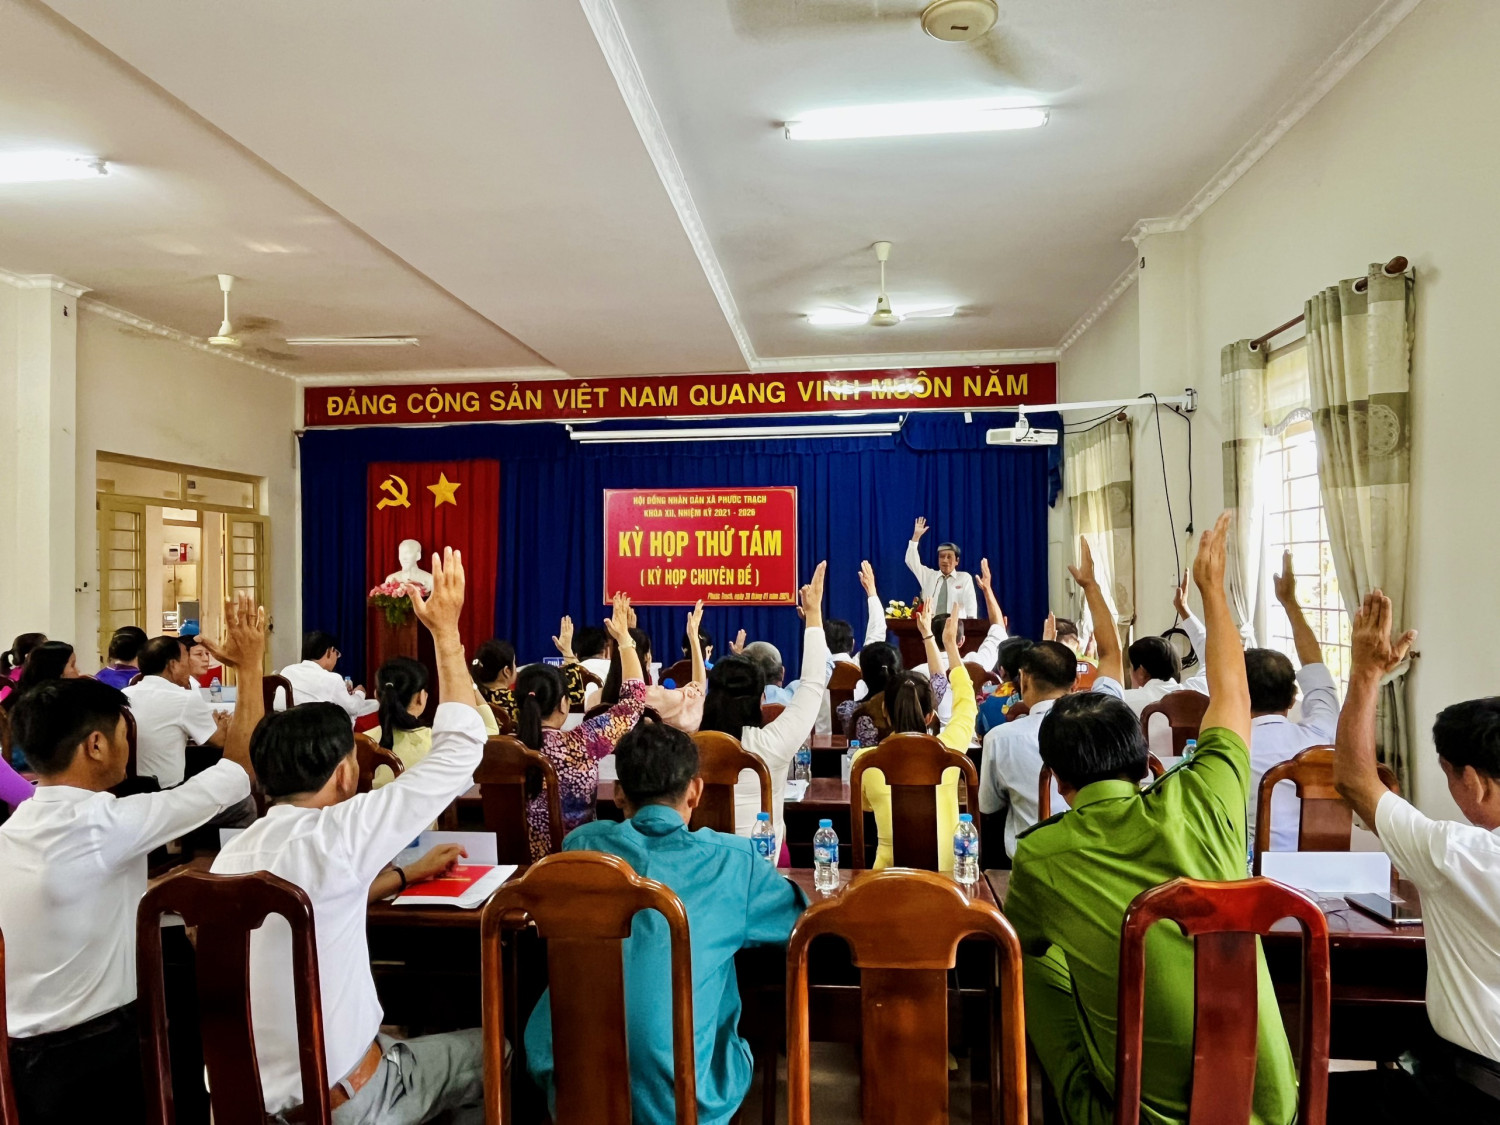 Tin: Hội đồng nhân dân xã Phước Trạch tổ chức kỳ họp thứ tám (về công tác cán bộ), khóa XII, nhiệm kỳ 2021 - 2026